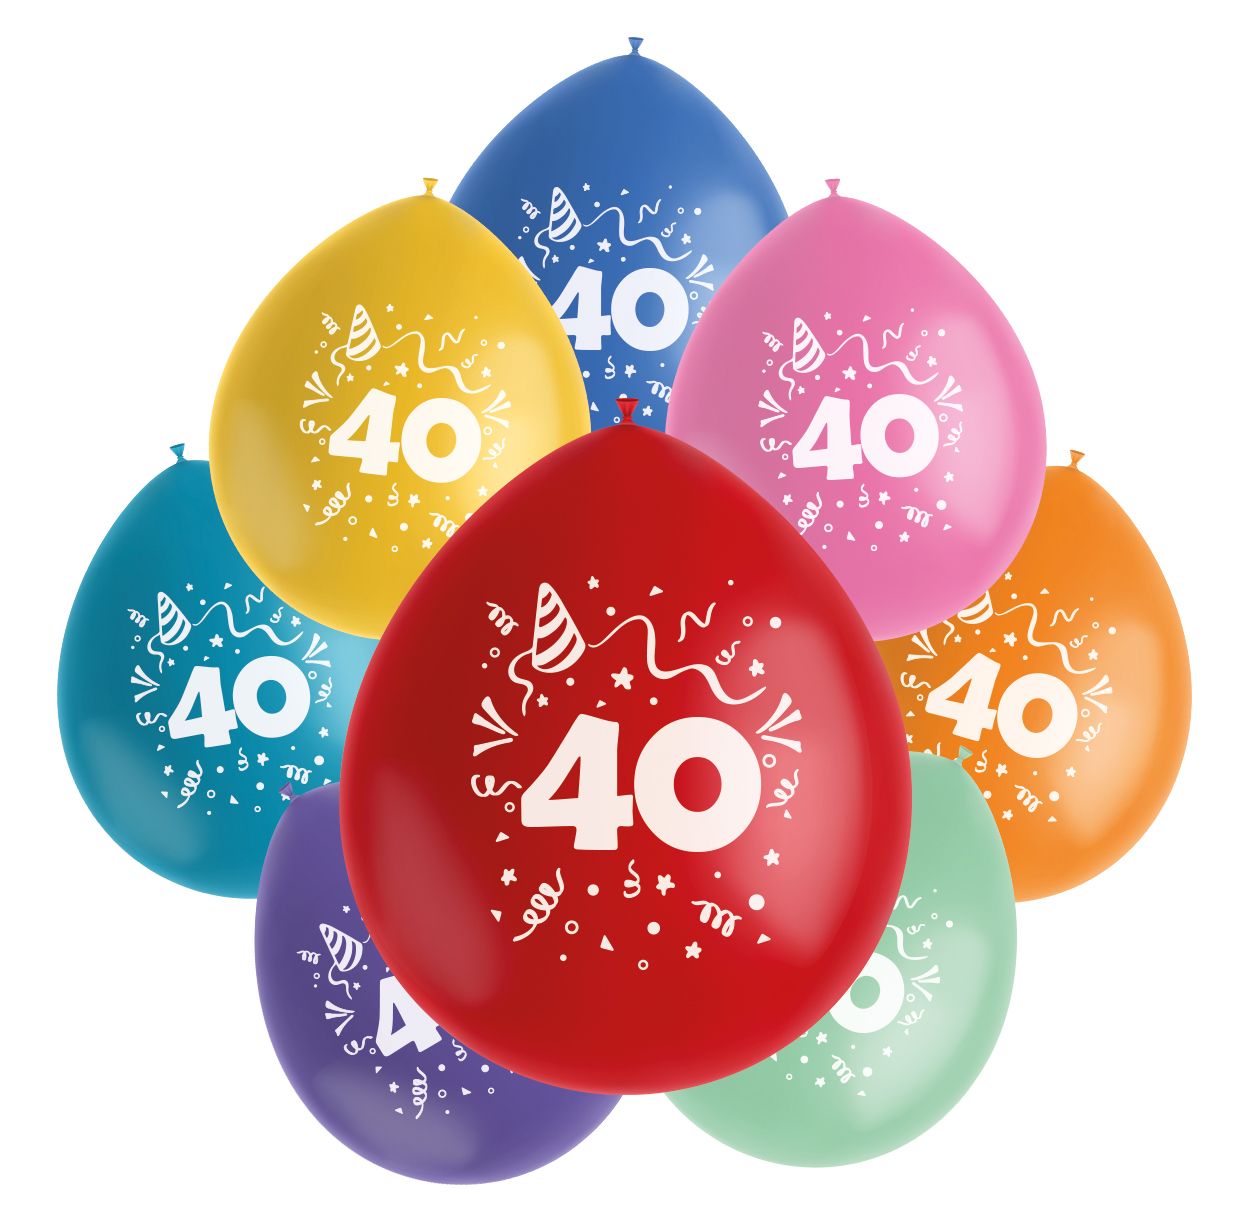 Color pop ballonnen set 40 jaar